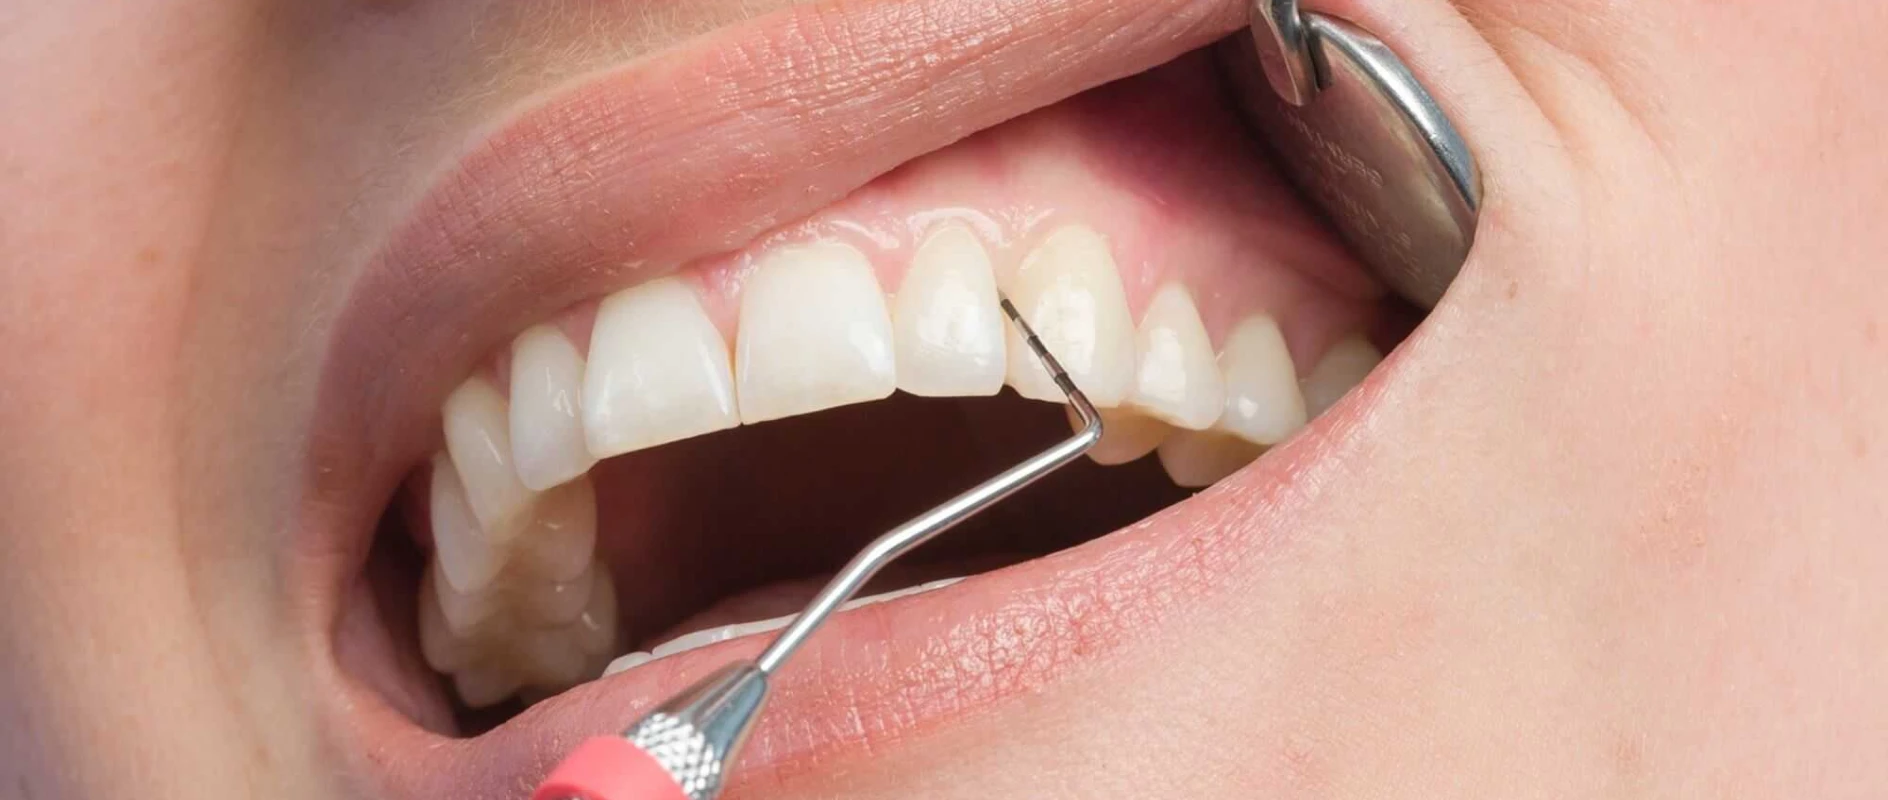 Traitement des maladies parodontales ou "déchaussement dentaire"au cabinet du Dr Bocquet à Douai